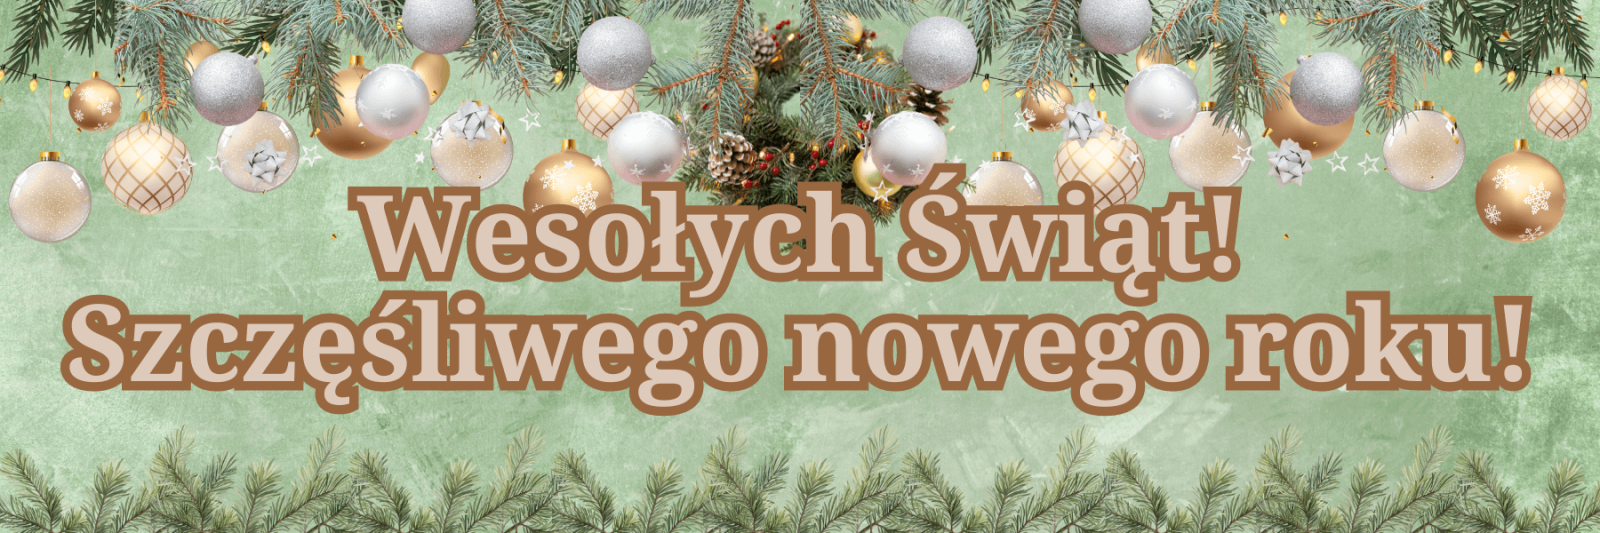 Joyeux Noel et bonne année! en polonais